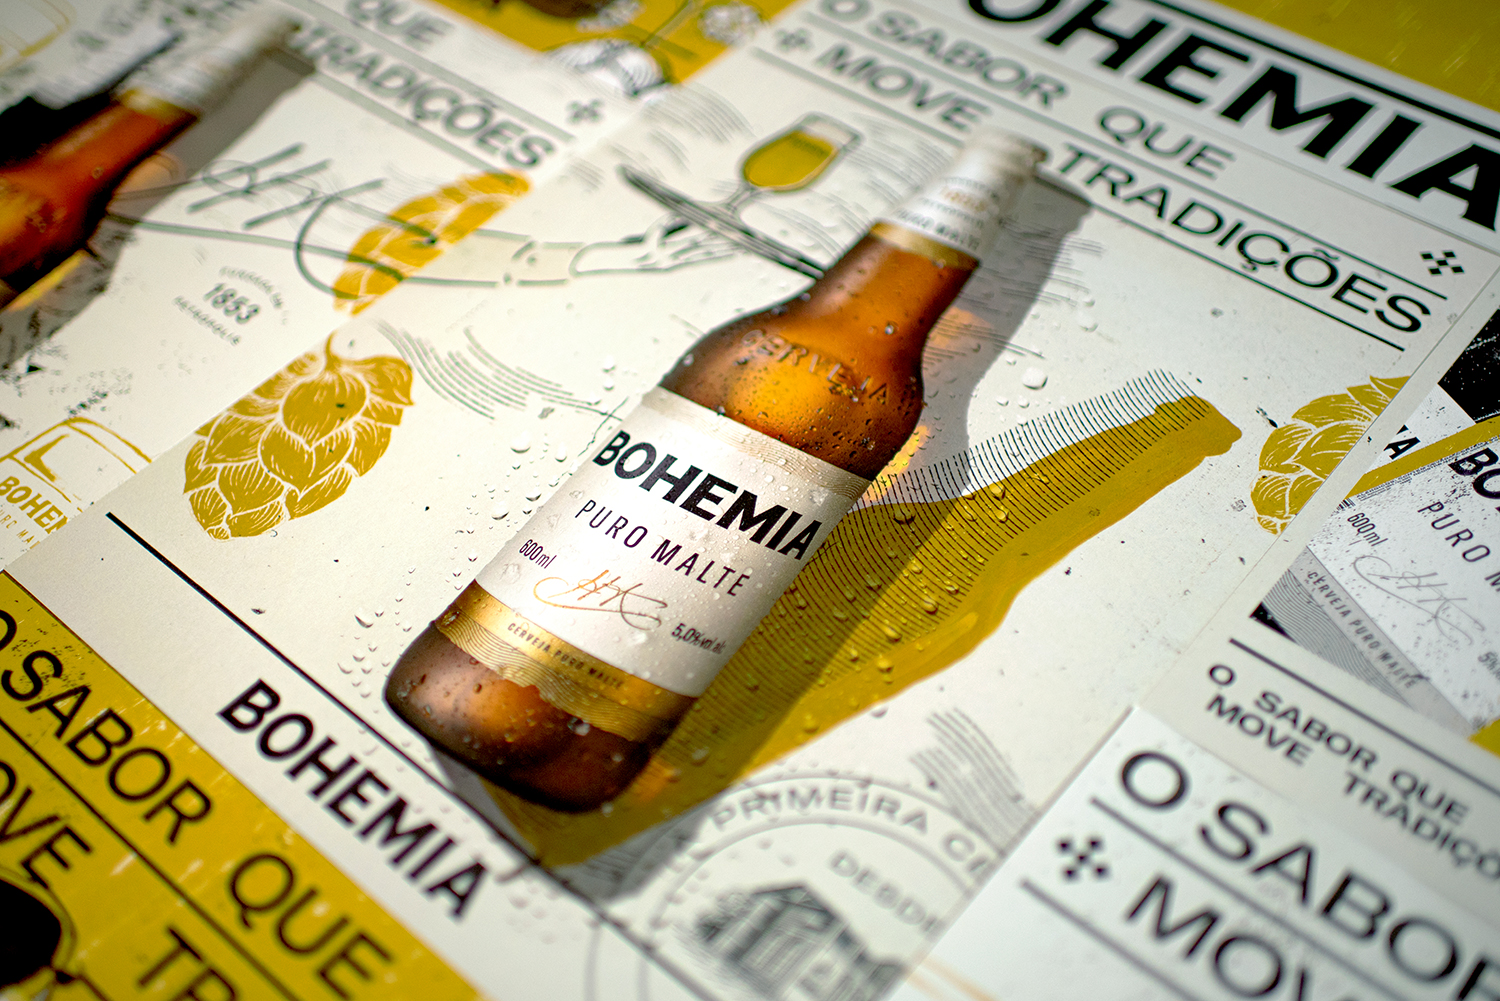 Em nova campanha de Bohemia, cervejaria propõe um novo olhar para a relação dos consumidores com suas tradições. Assista: